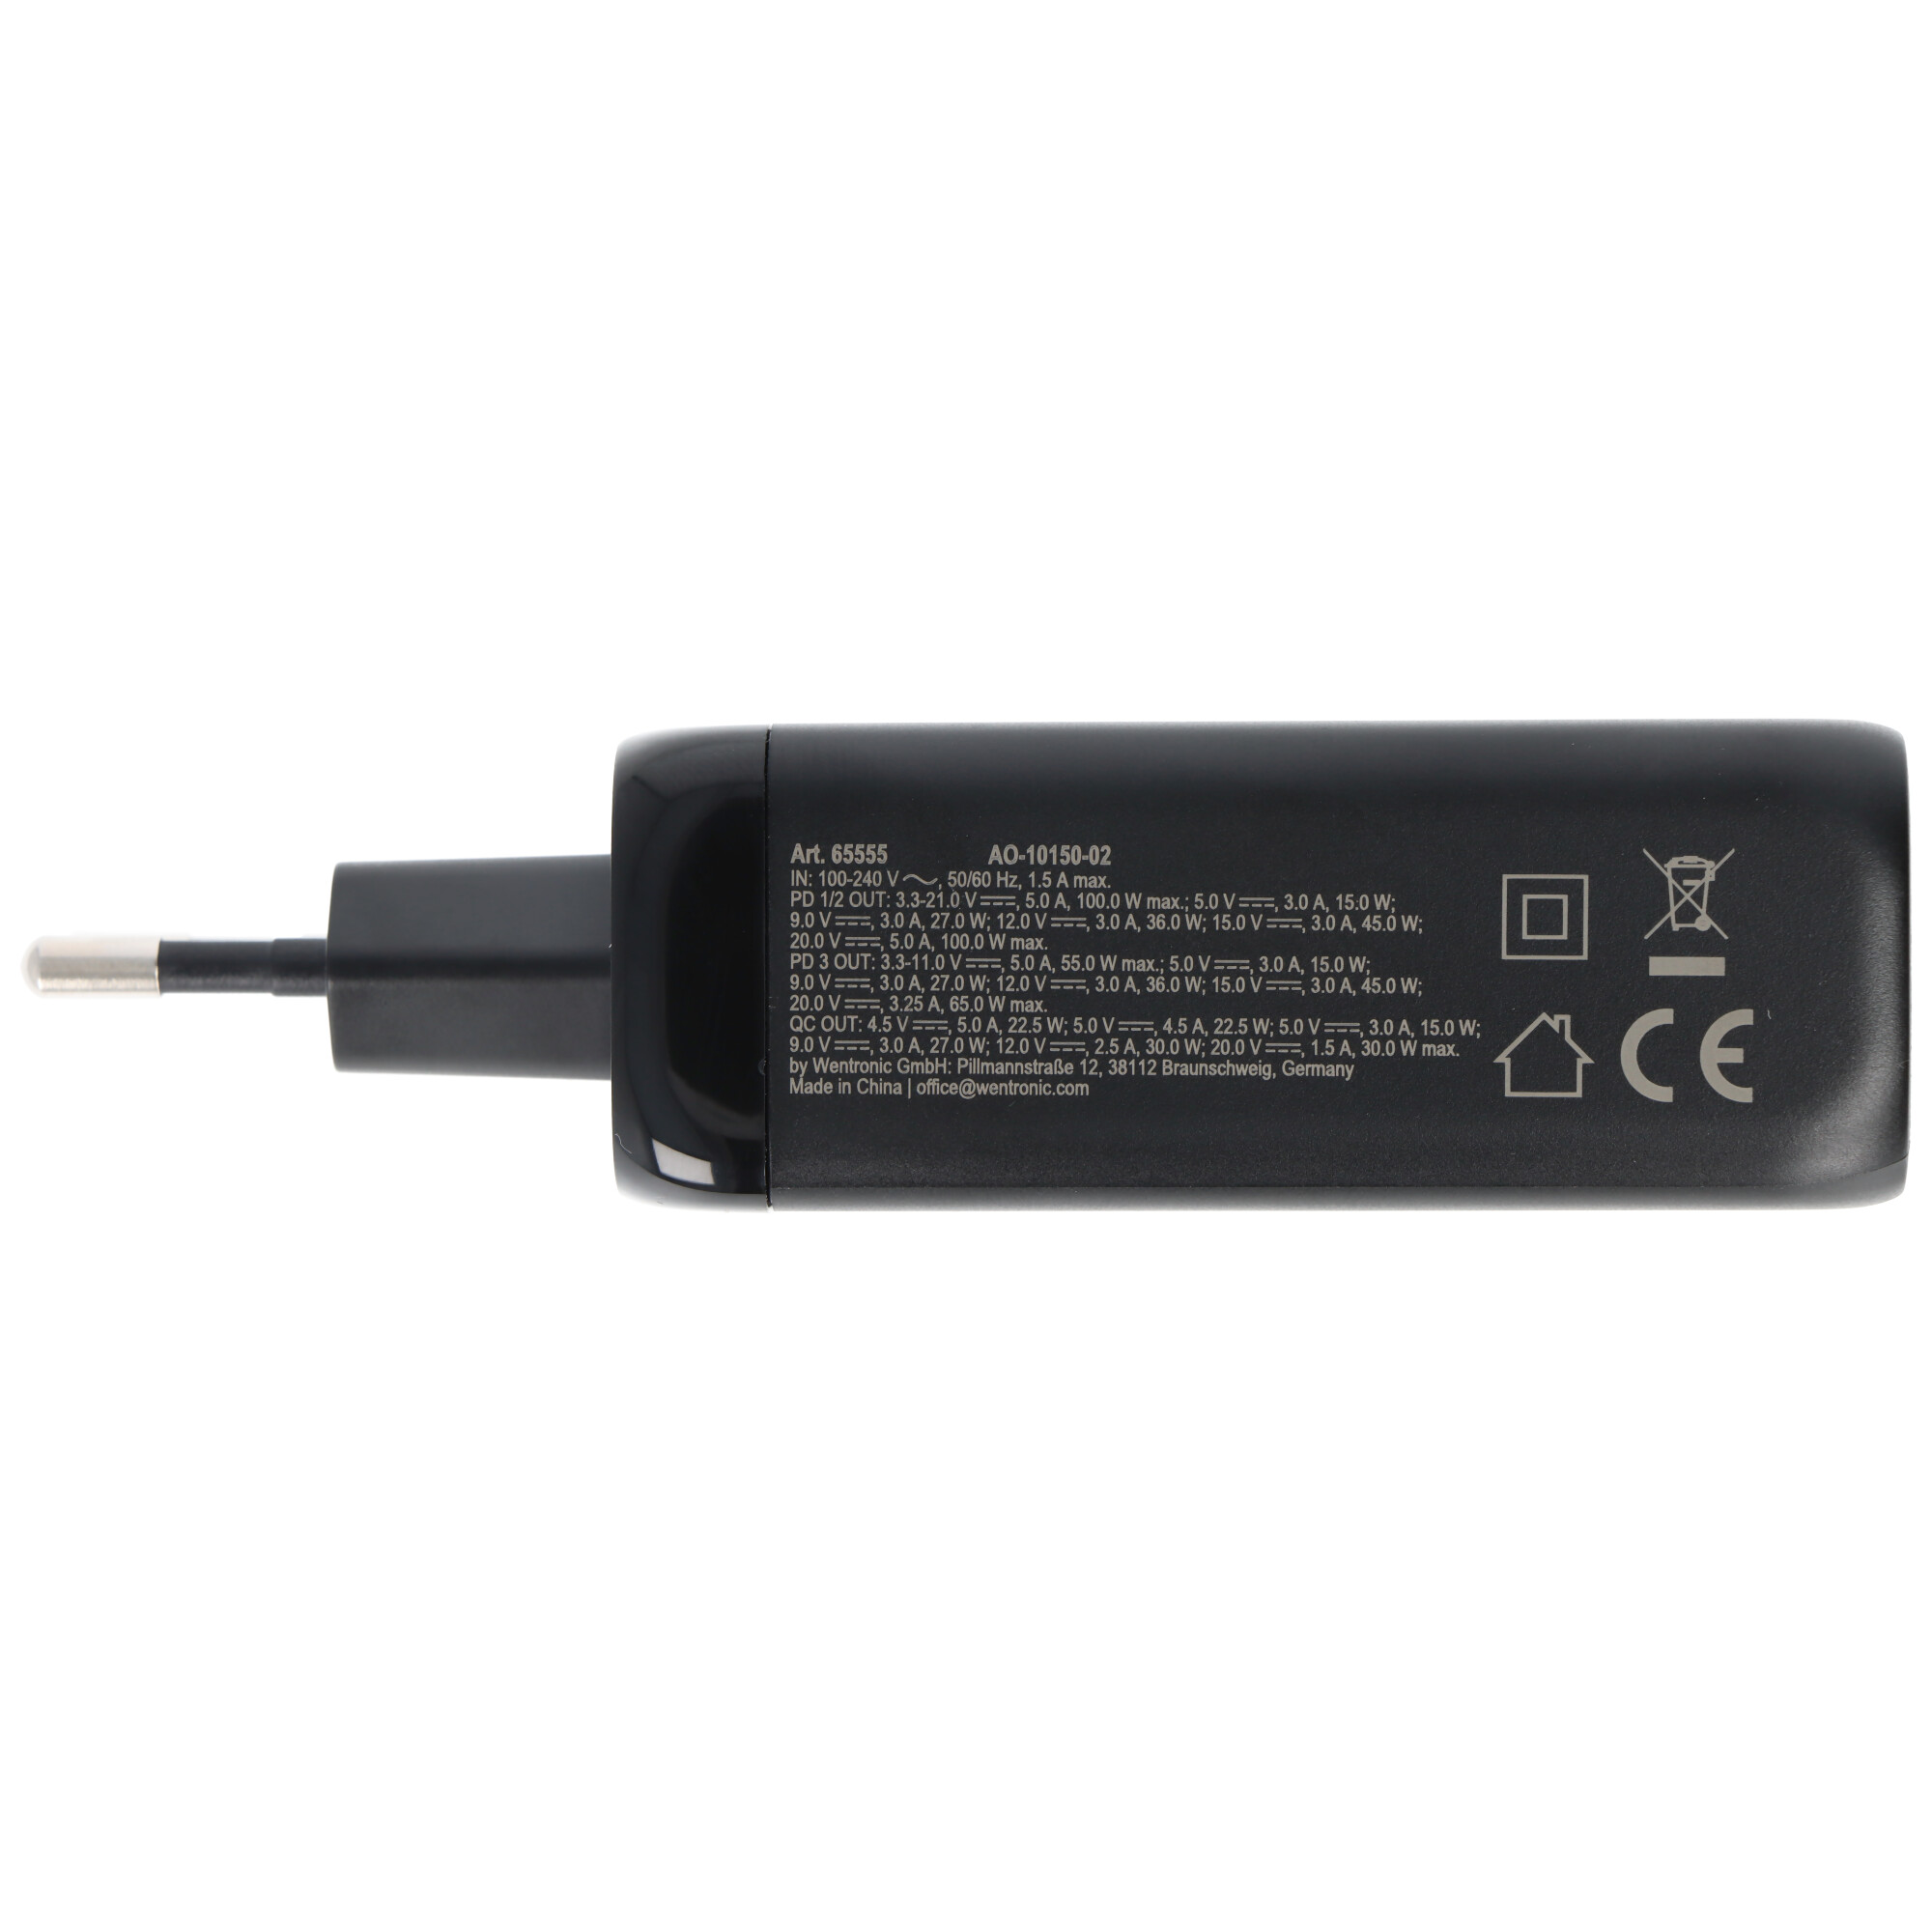 Laden mit bis zu 100W, das USB-C™ PD Schnellladegerät Multiport 100W schwarz